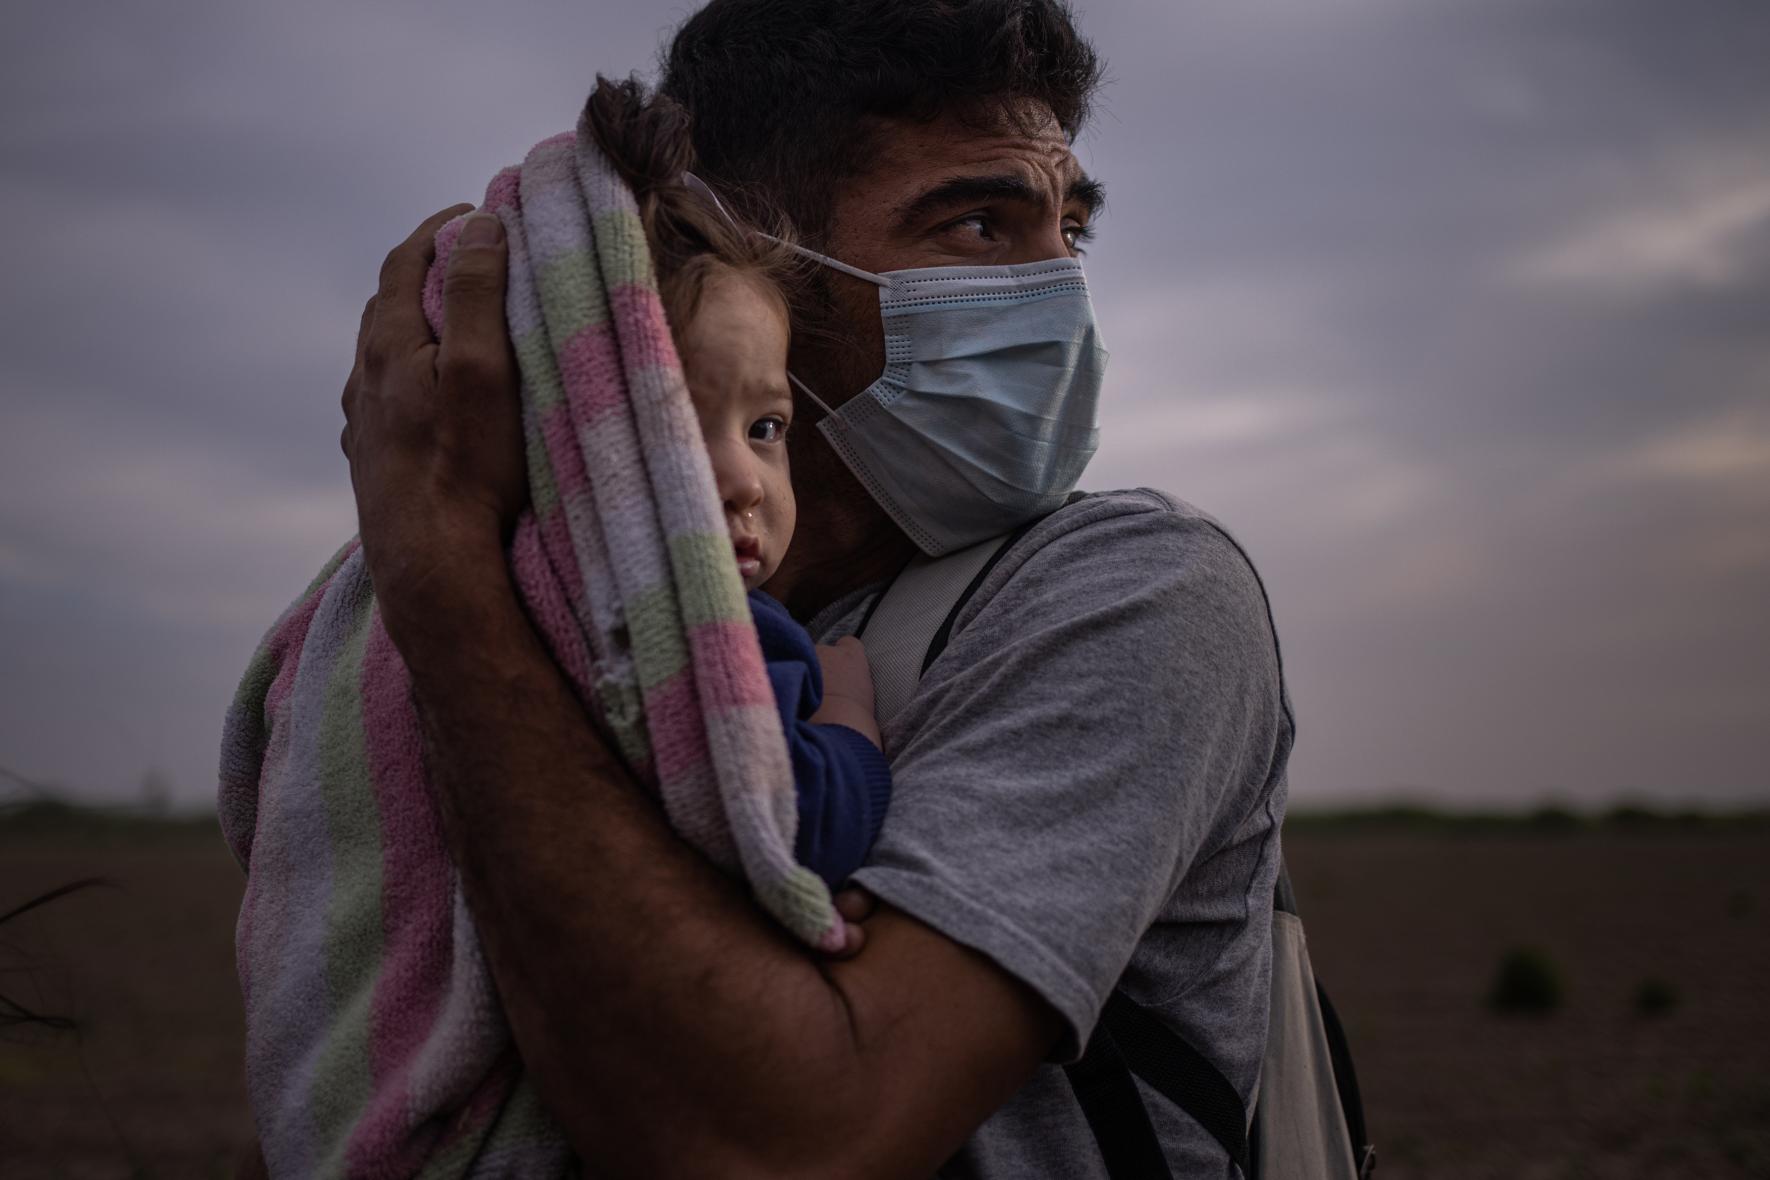 Ο Φρανσίσκο Αντόνιο Ναβάρο, 34 ετών, από την Ονδούρα, μετανάστης που ζητά άσυλο, κρατά στην αγκαλιά του την κόρη του Μέγκαν στην αμερικανική όχθη του ποταμού Ρίο Γκράντε καθώς περιμένουν τη μεταφορά τους σε κέντρο ταυτοποίησης 